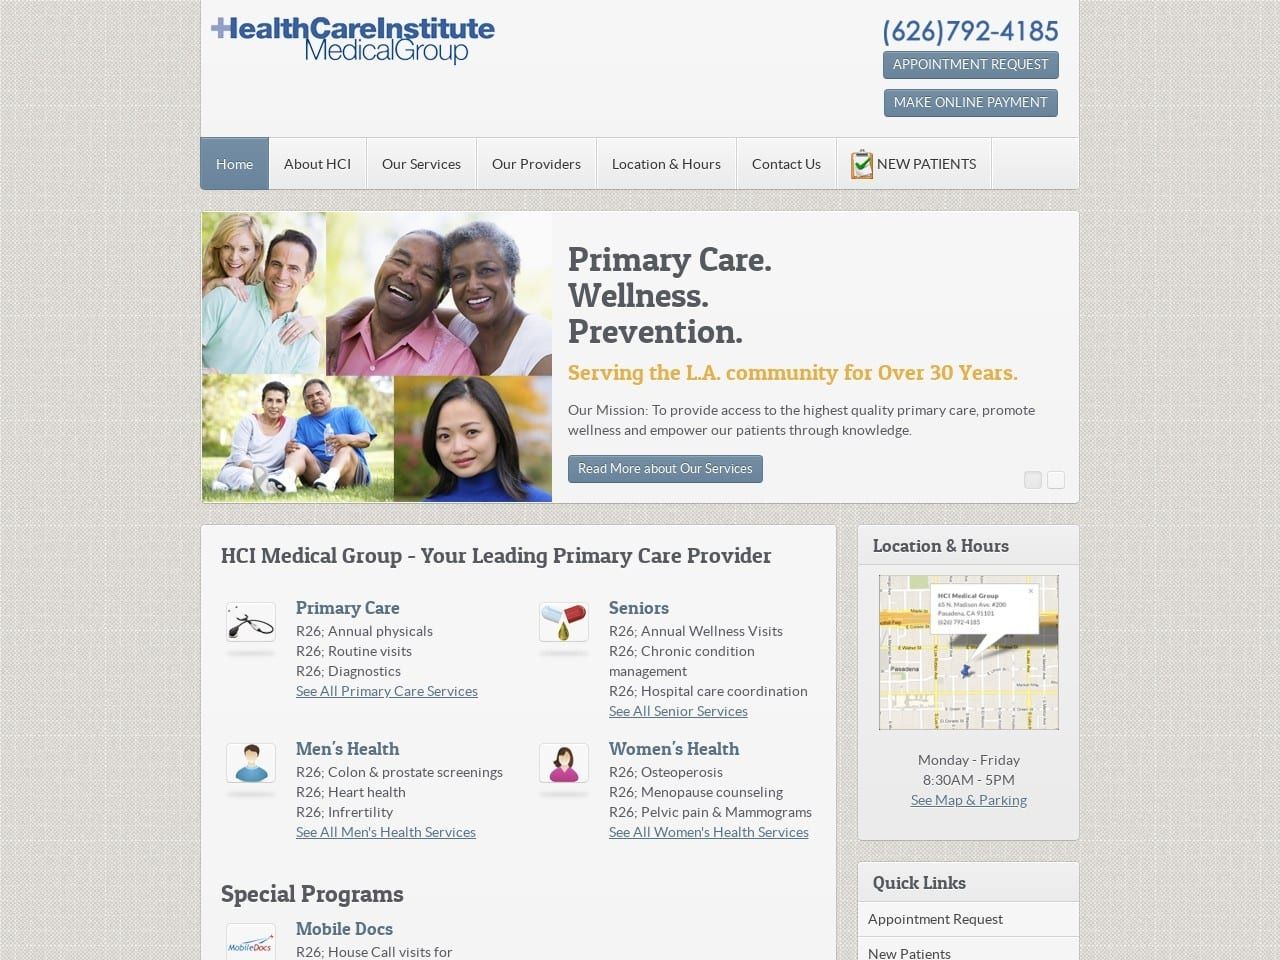 Health Care Institute Medical Group Website Screenshot from hcimed.com